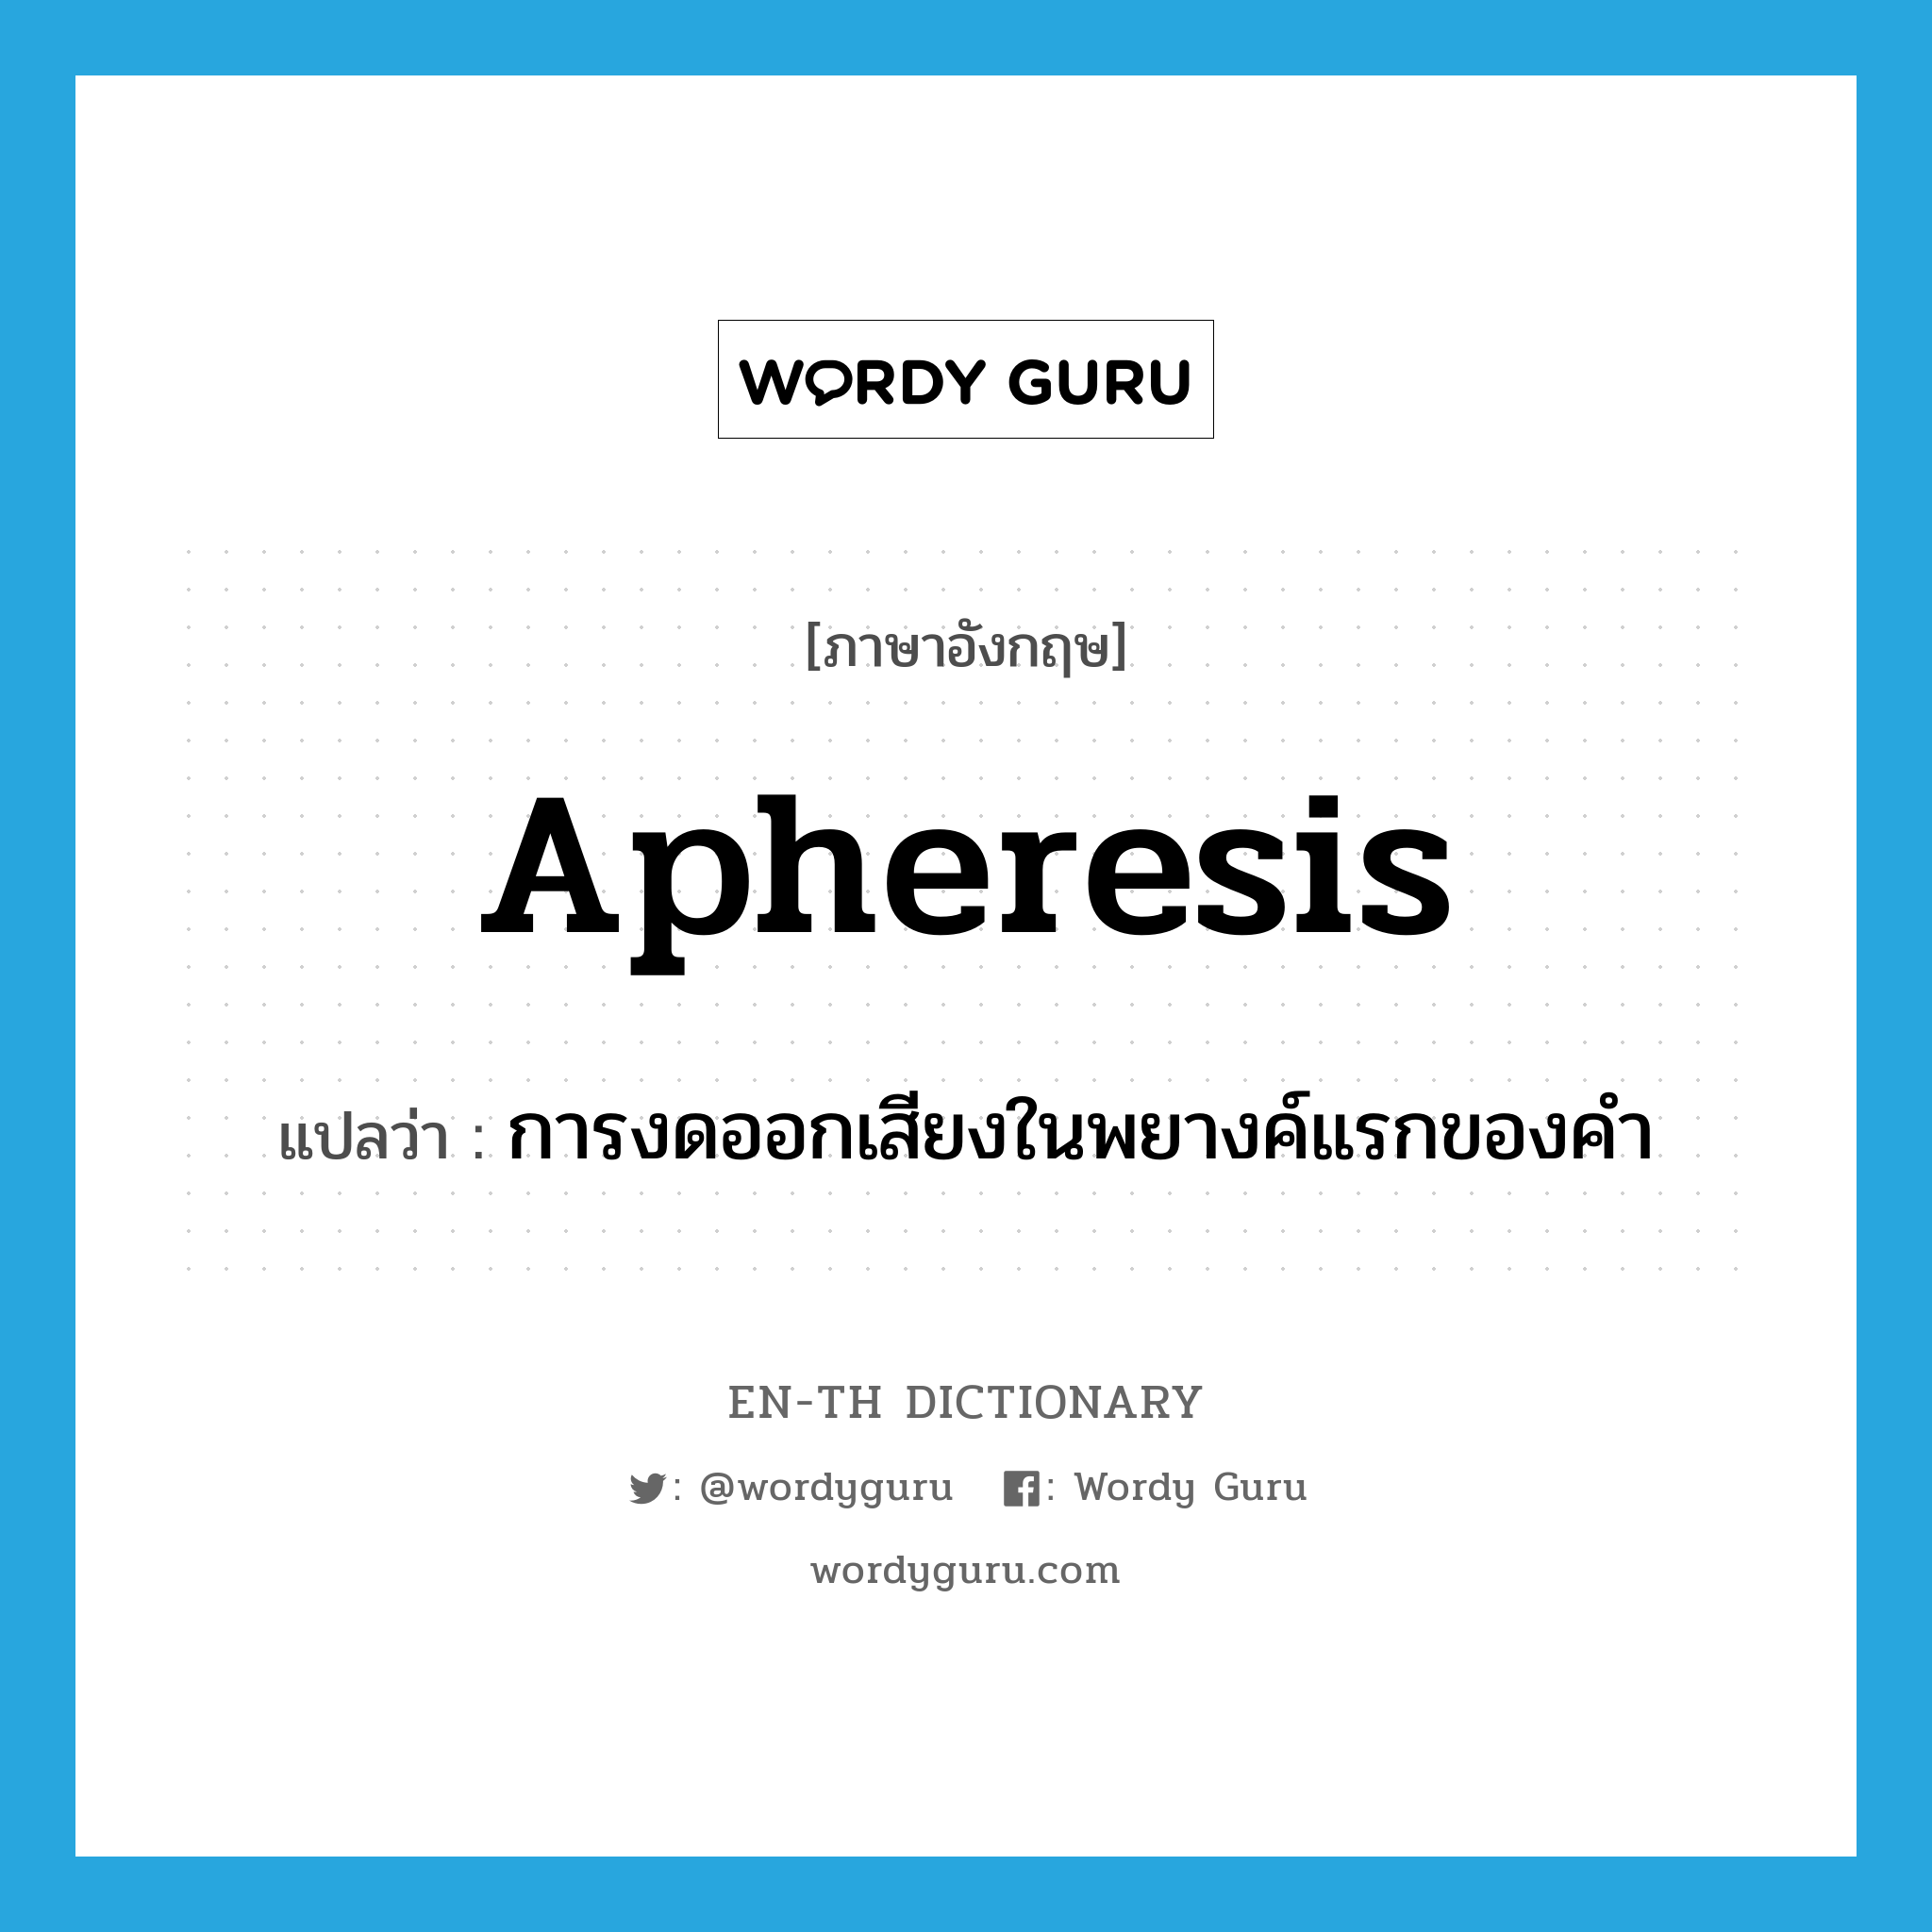 การงดออกเสียงในพยางค์แรกของคำ ภาษาอังกฤษ?, คำศัพท์ภาษาอังกฤษ การงดออกเสียงในพยางค์แรกของคำ แปลว่า apheresis ประเภท N หมวด N